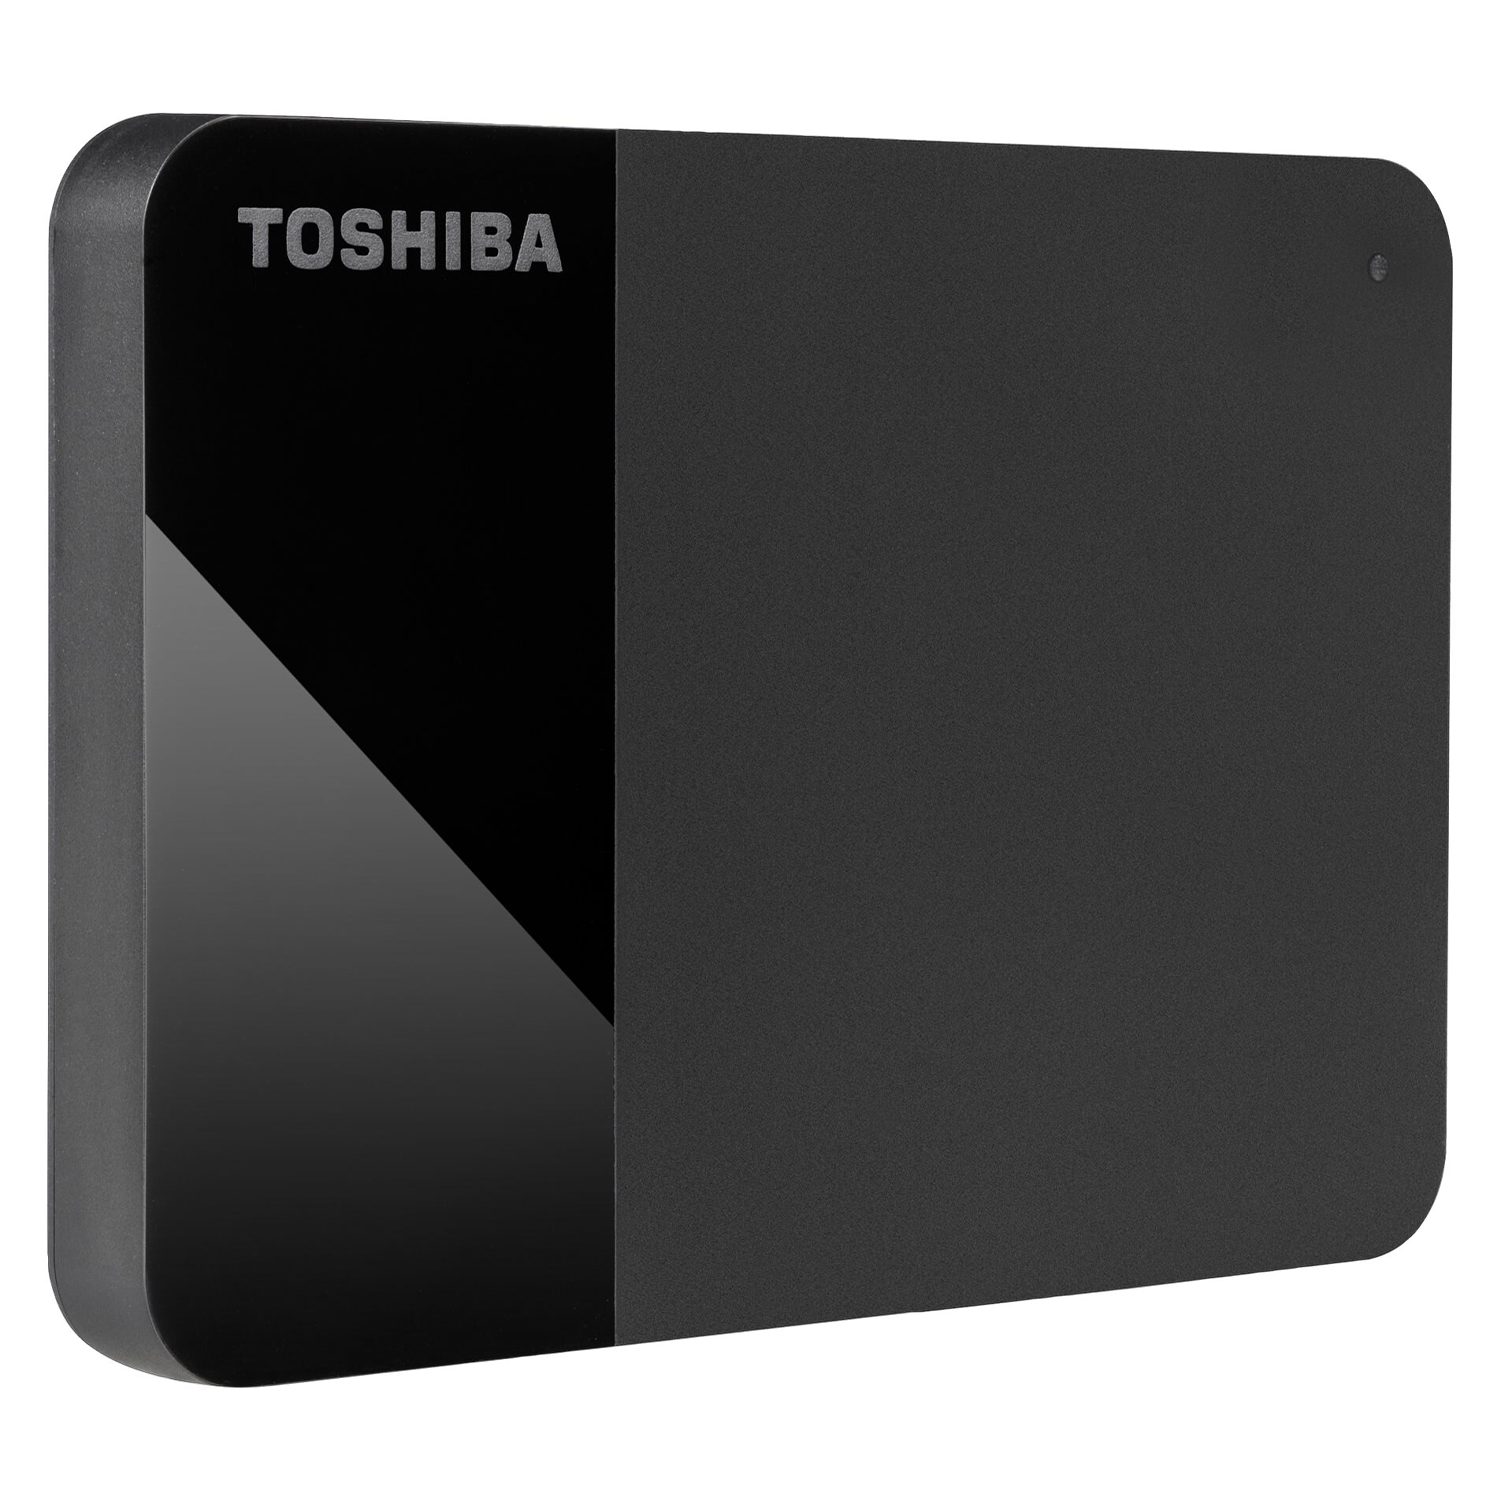 HD Externo Toshiba Canvio Ready 1TB / USB 3.2 - (HDTP310XK3AA)